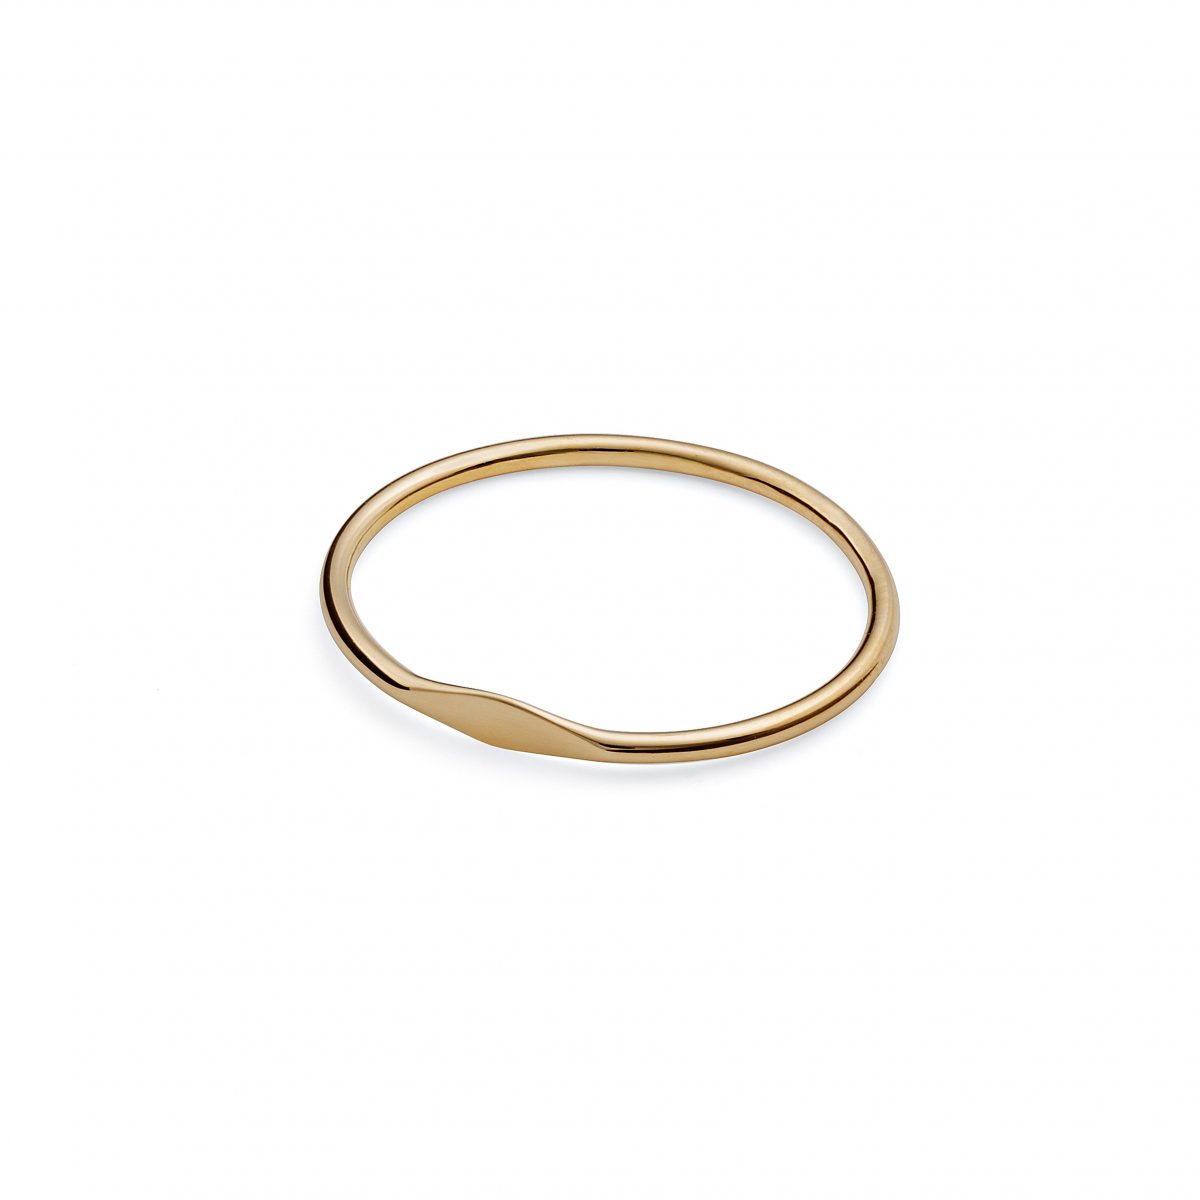 samojauskaite_jewellery_line_ring_gold_main